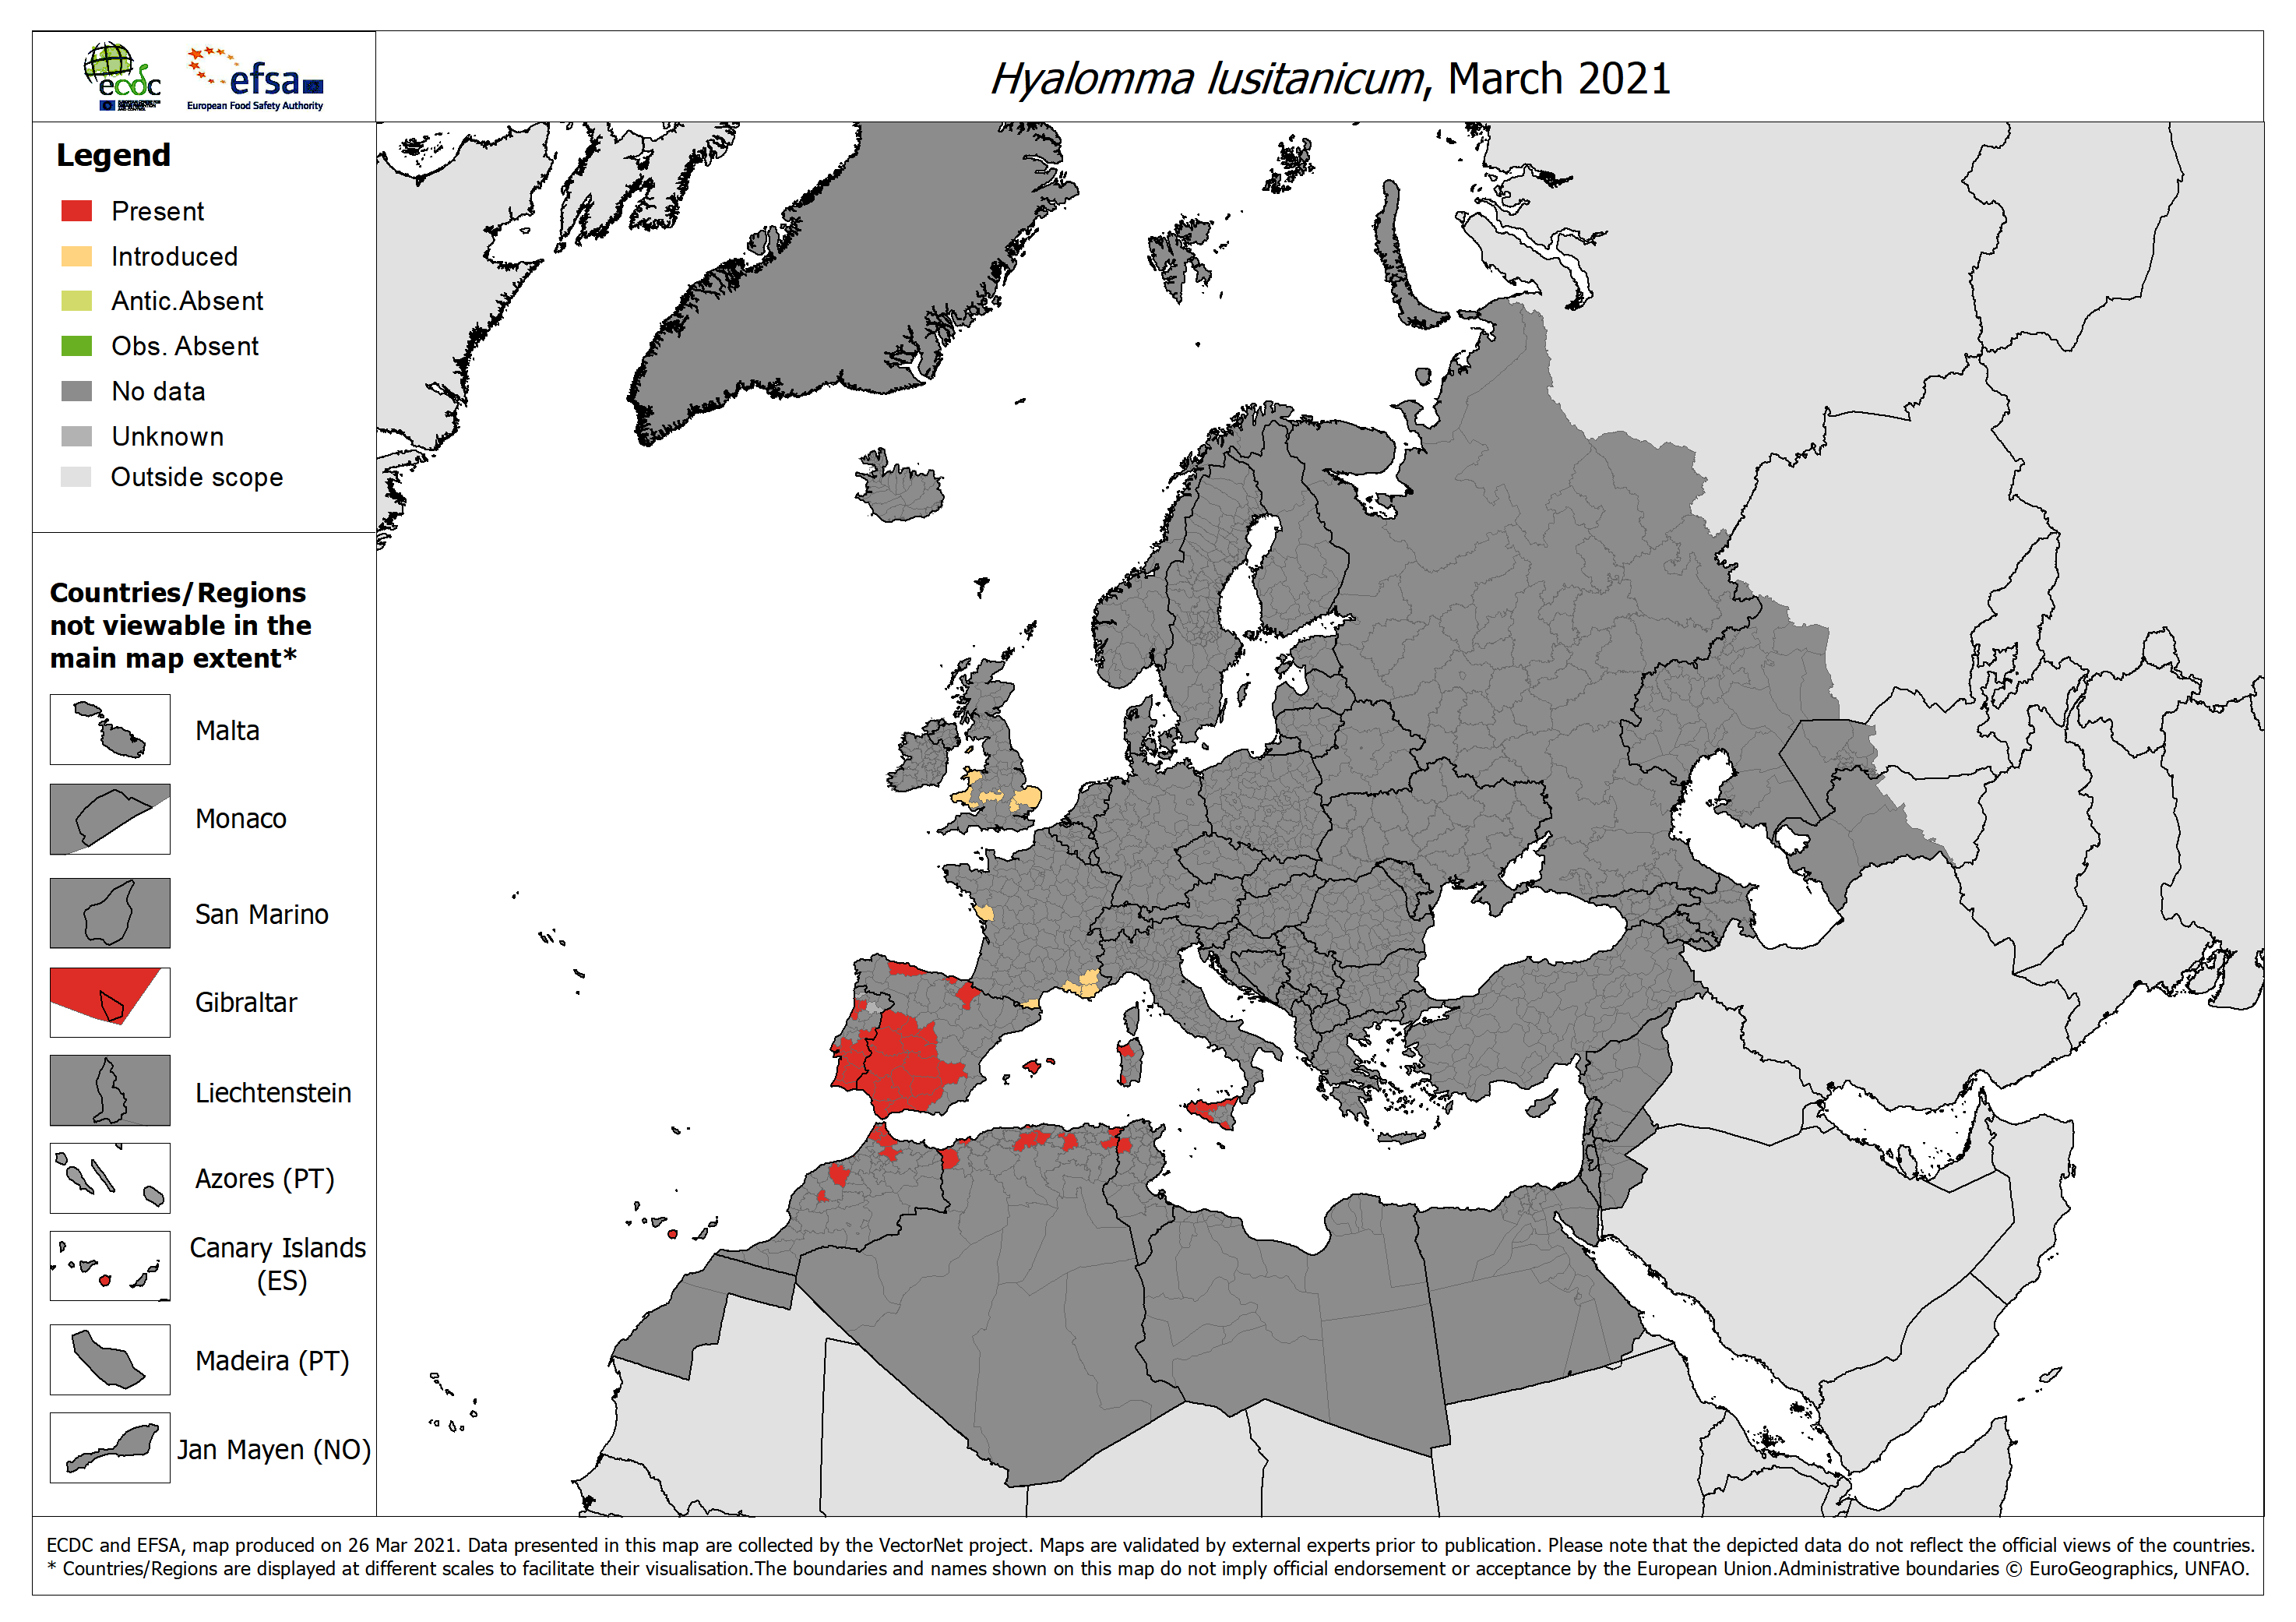 Distribution de Hyalomma lusitanicum en Europe et sur le pourtour méditerranéen en mars 2021